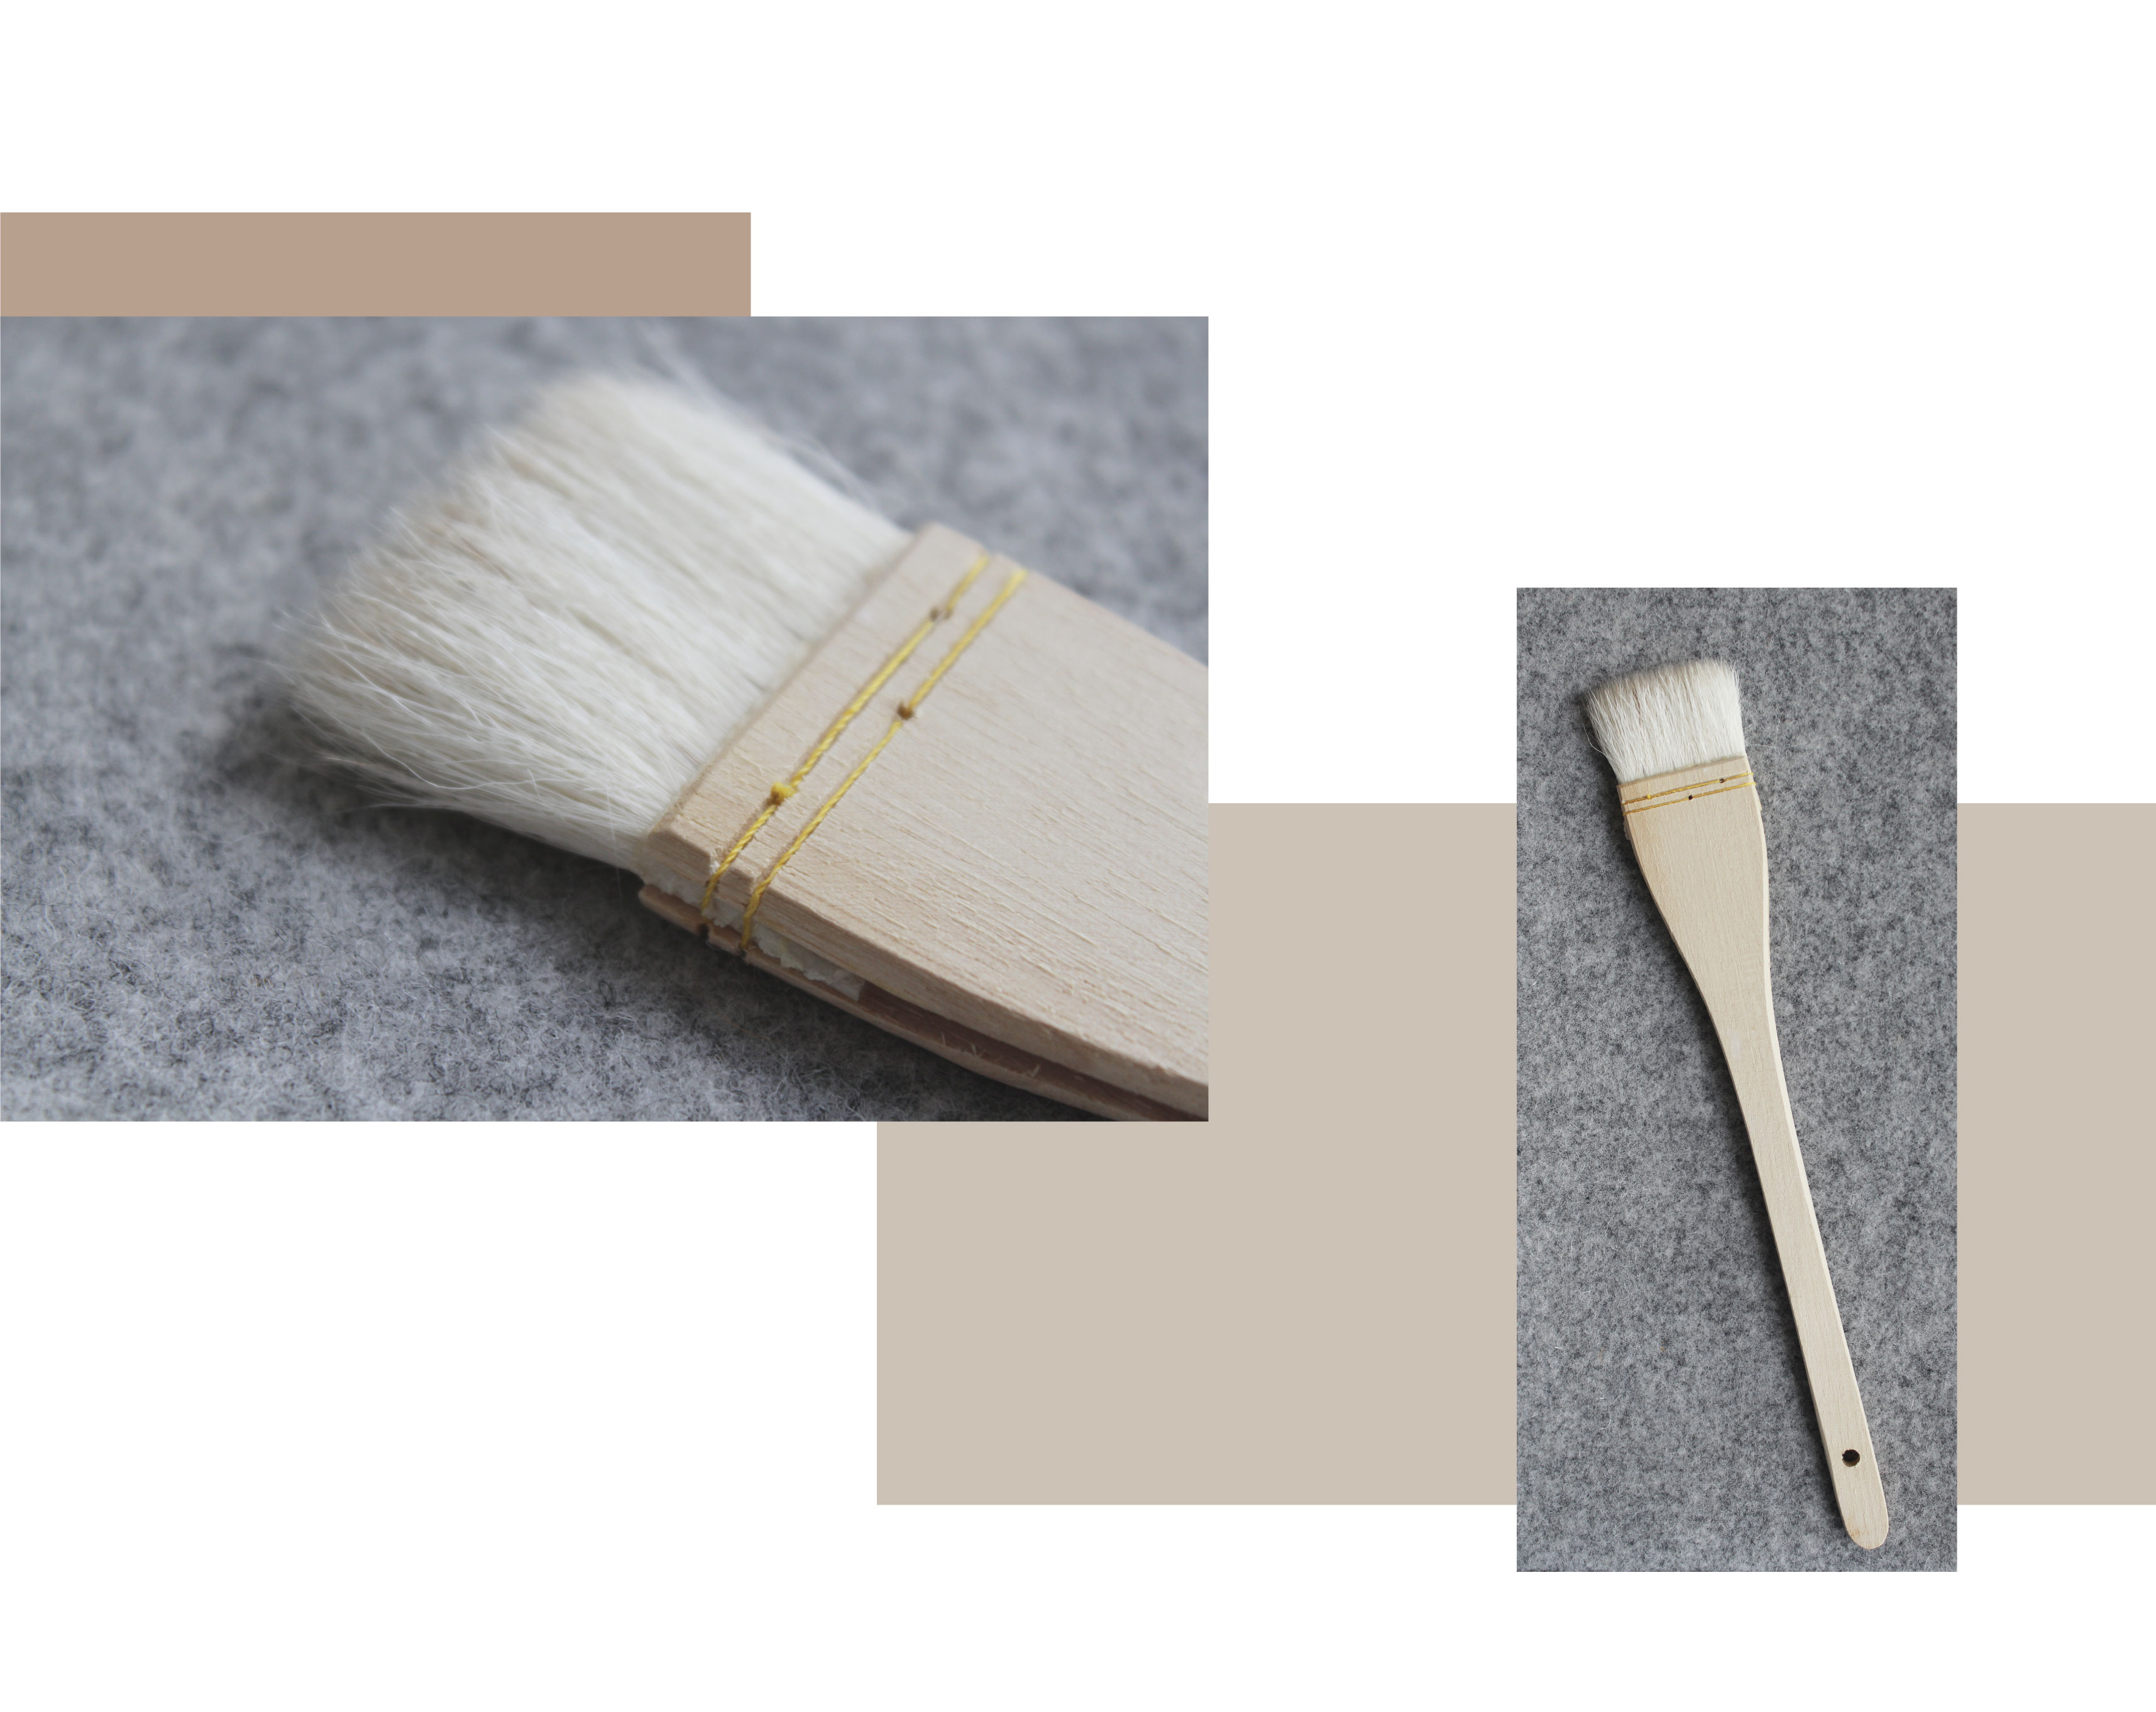 to billeder, en shving en nærbillede af en kulmule glasur børste på en grå baggrund. Den anden viser den fulde kulmulebørste. Træhåndtag, syning, fibrøs børste.